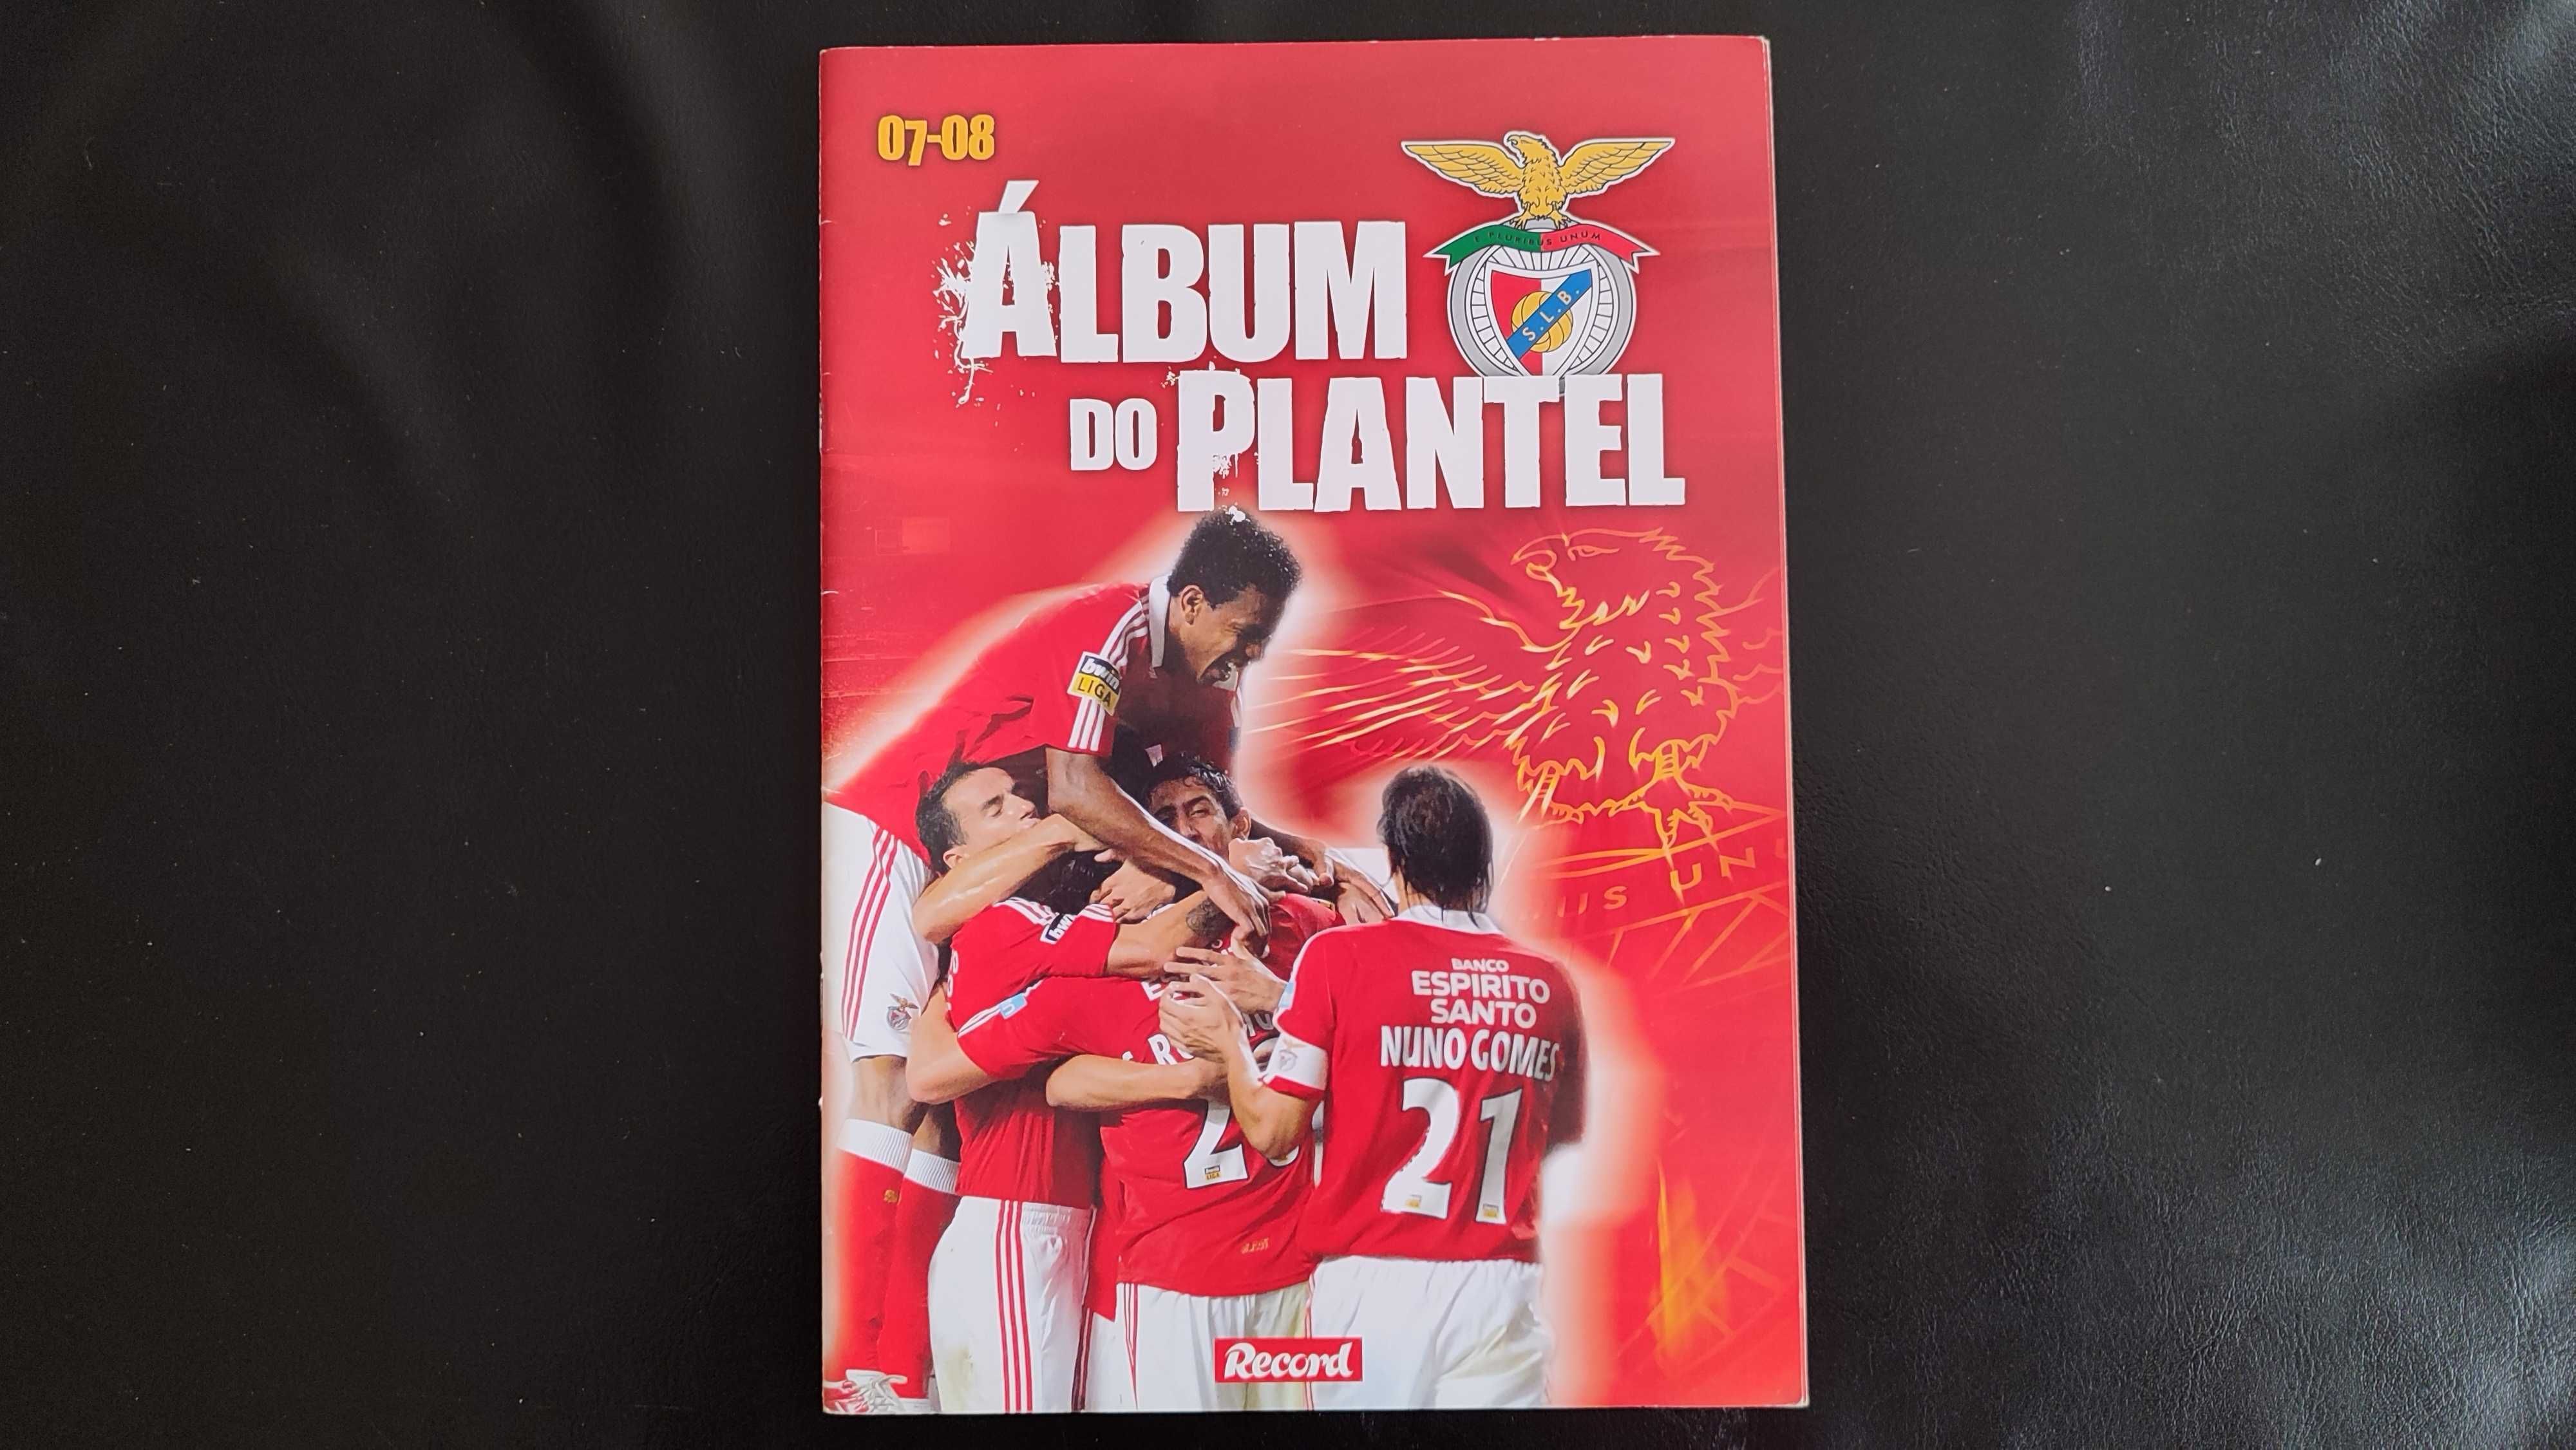 Benfica - Álbum do Plantel 07-08